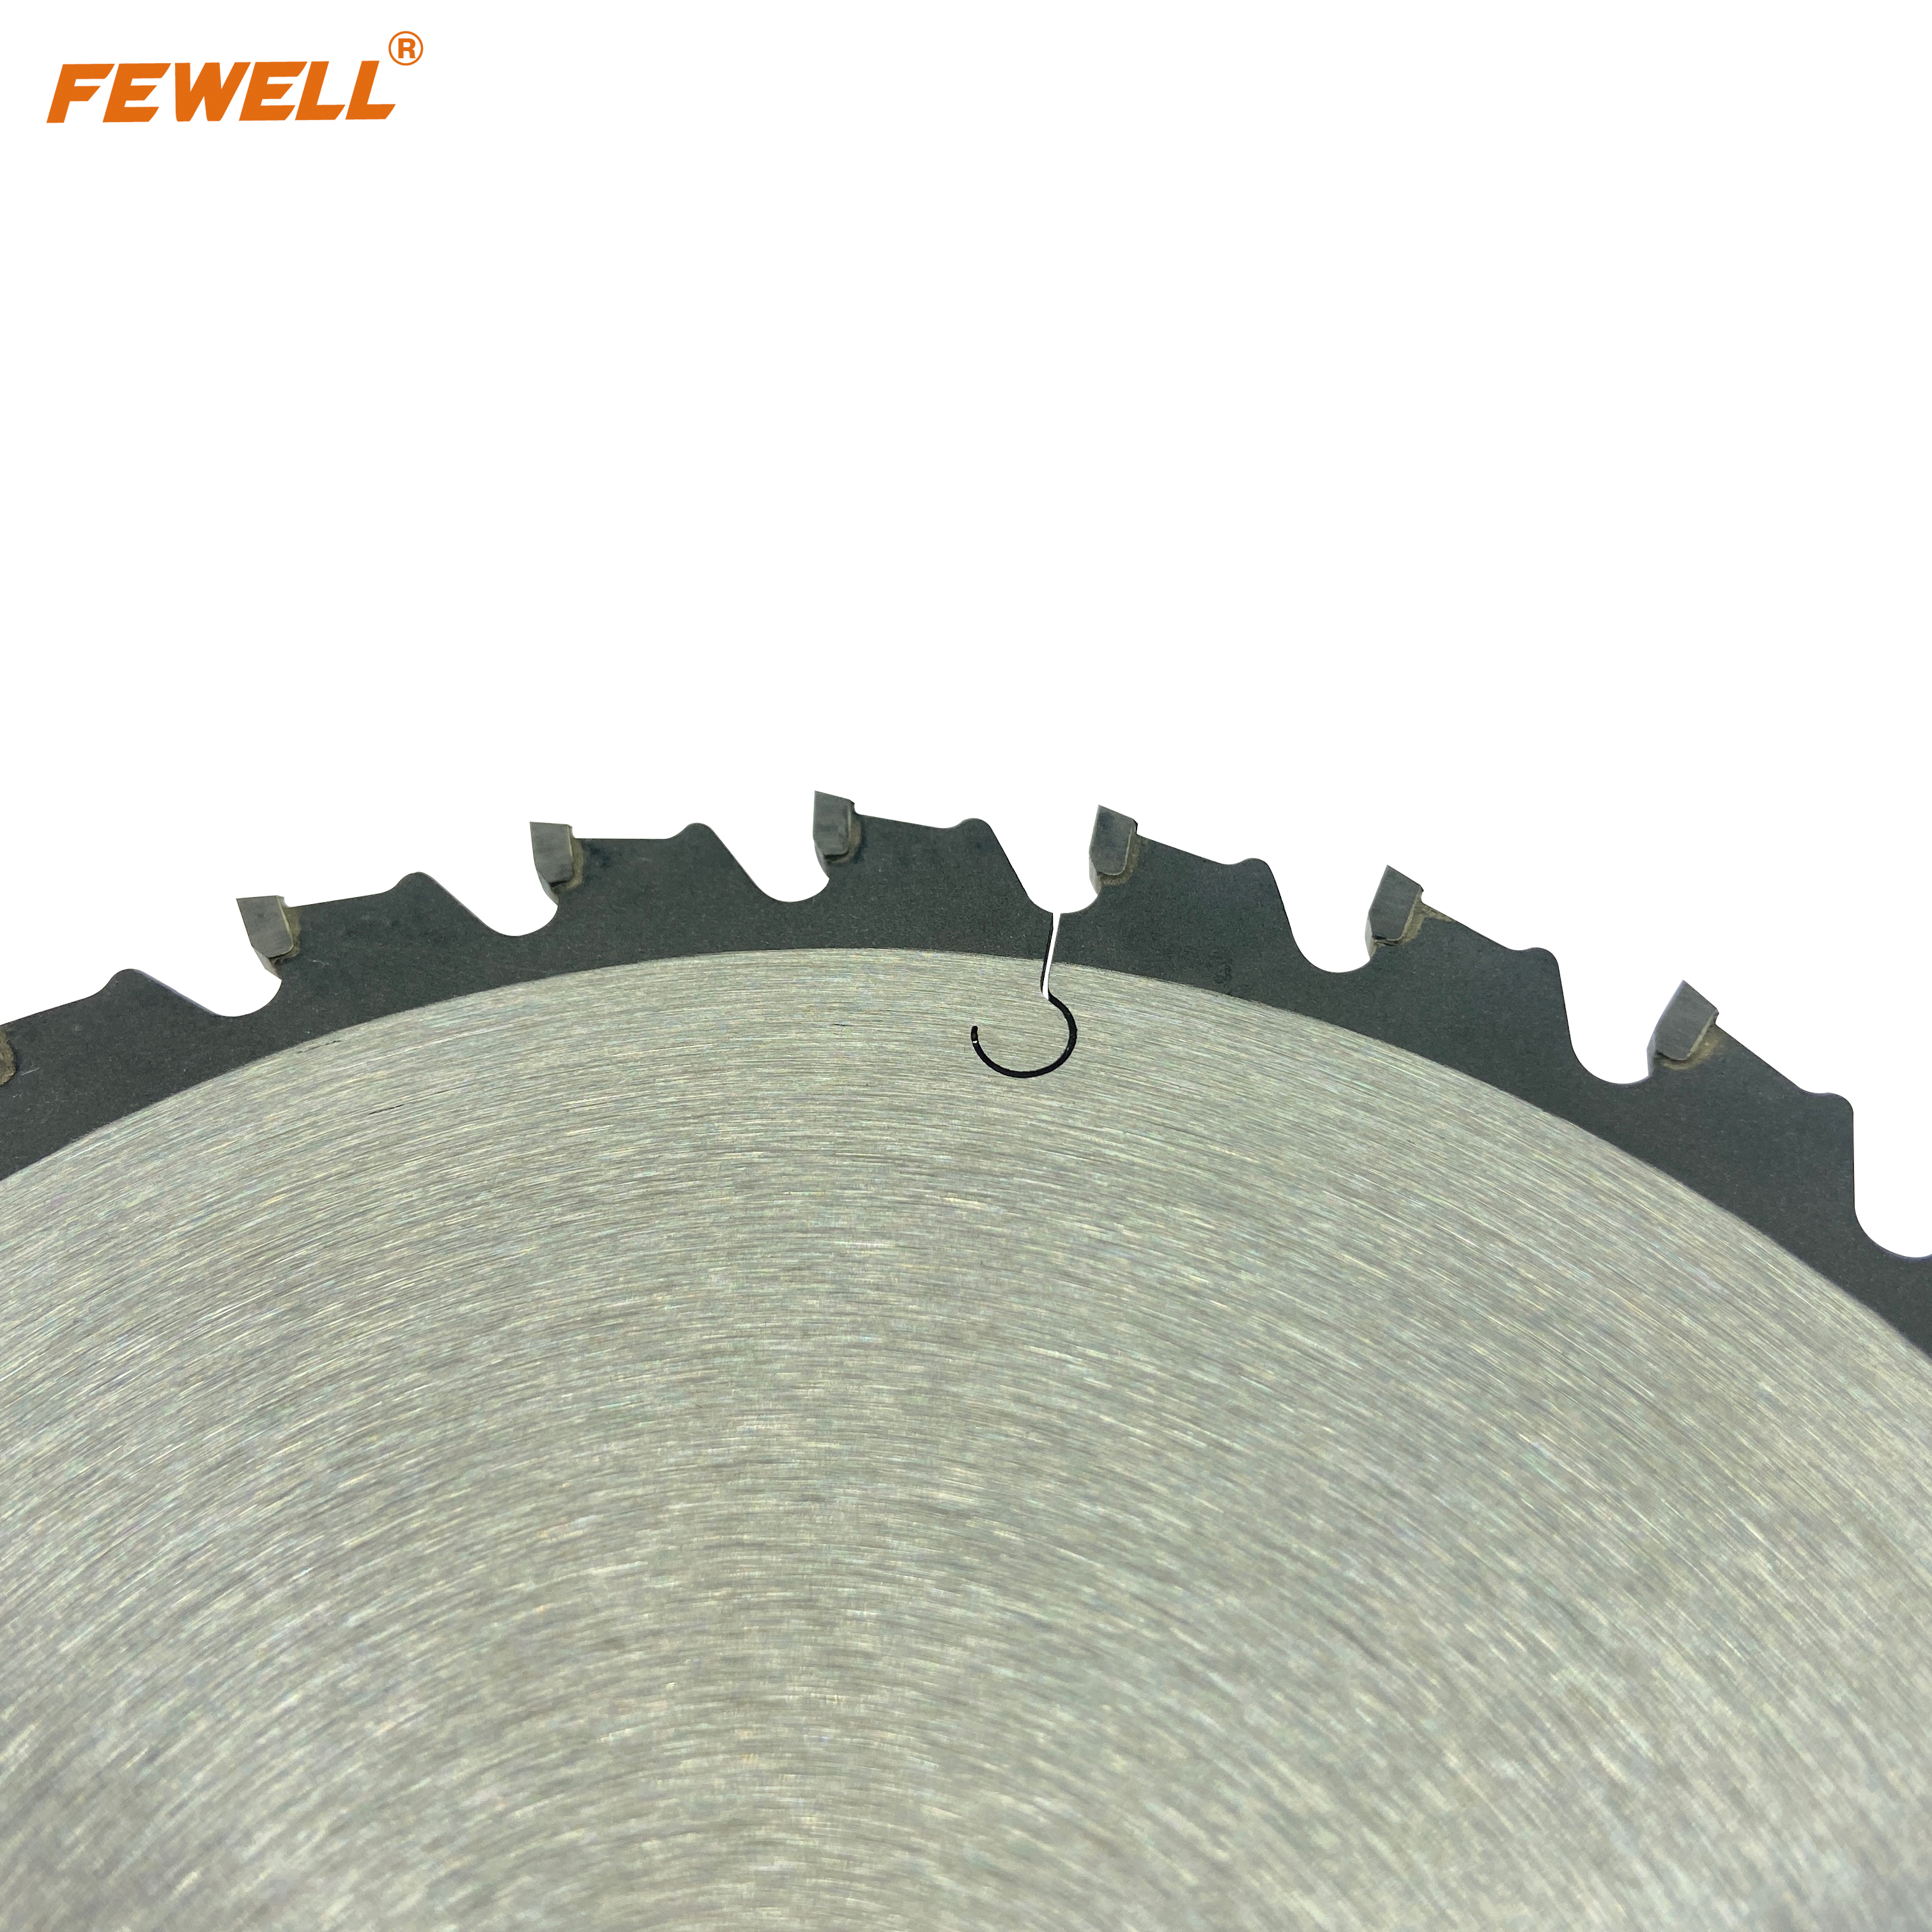 Hoja de sierra circular tct de exportación de 6 pulgadas 150 * 30T * 20 mm para cortar metal